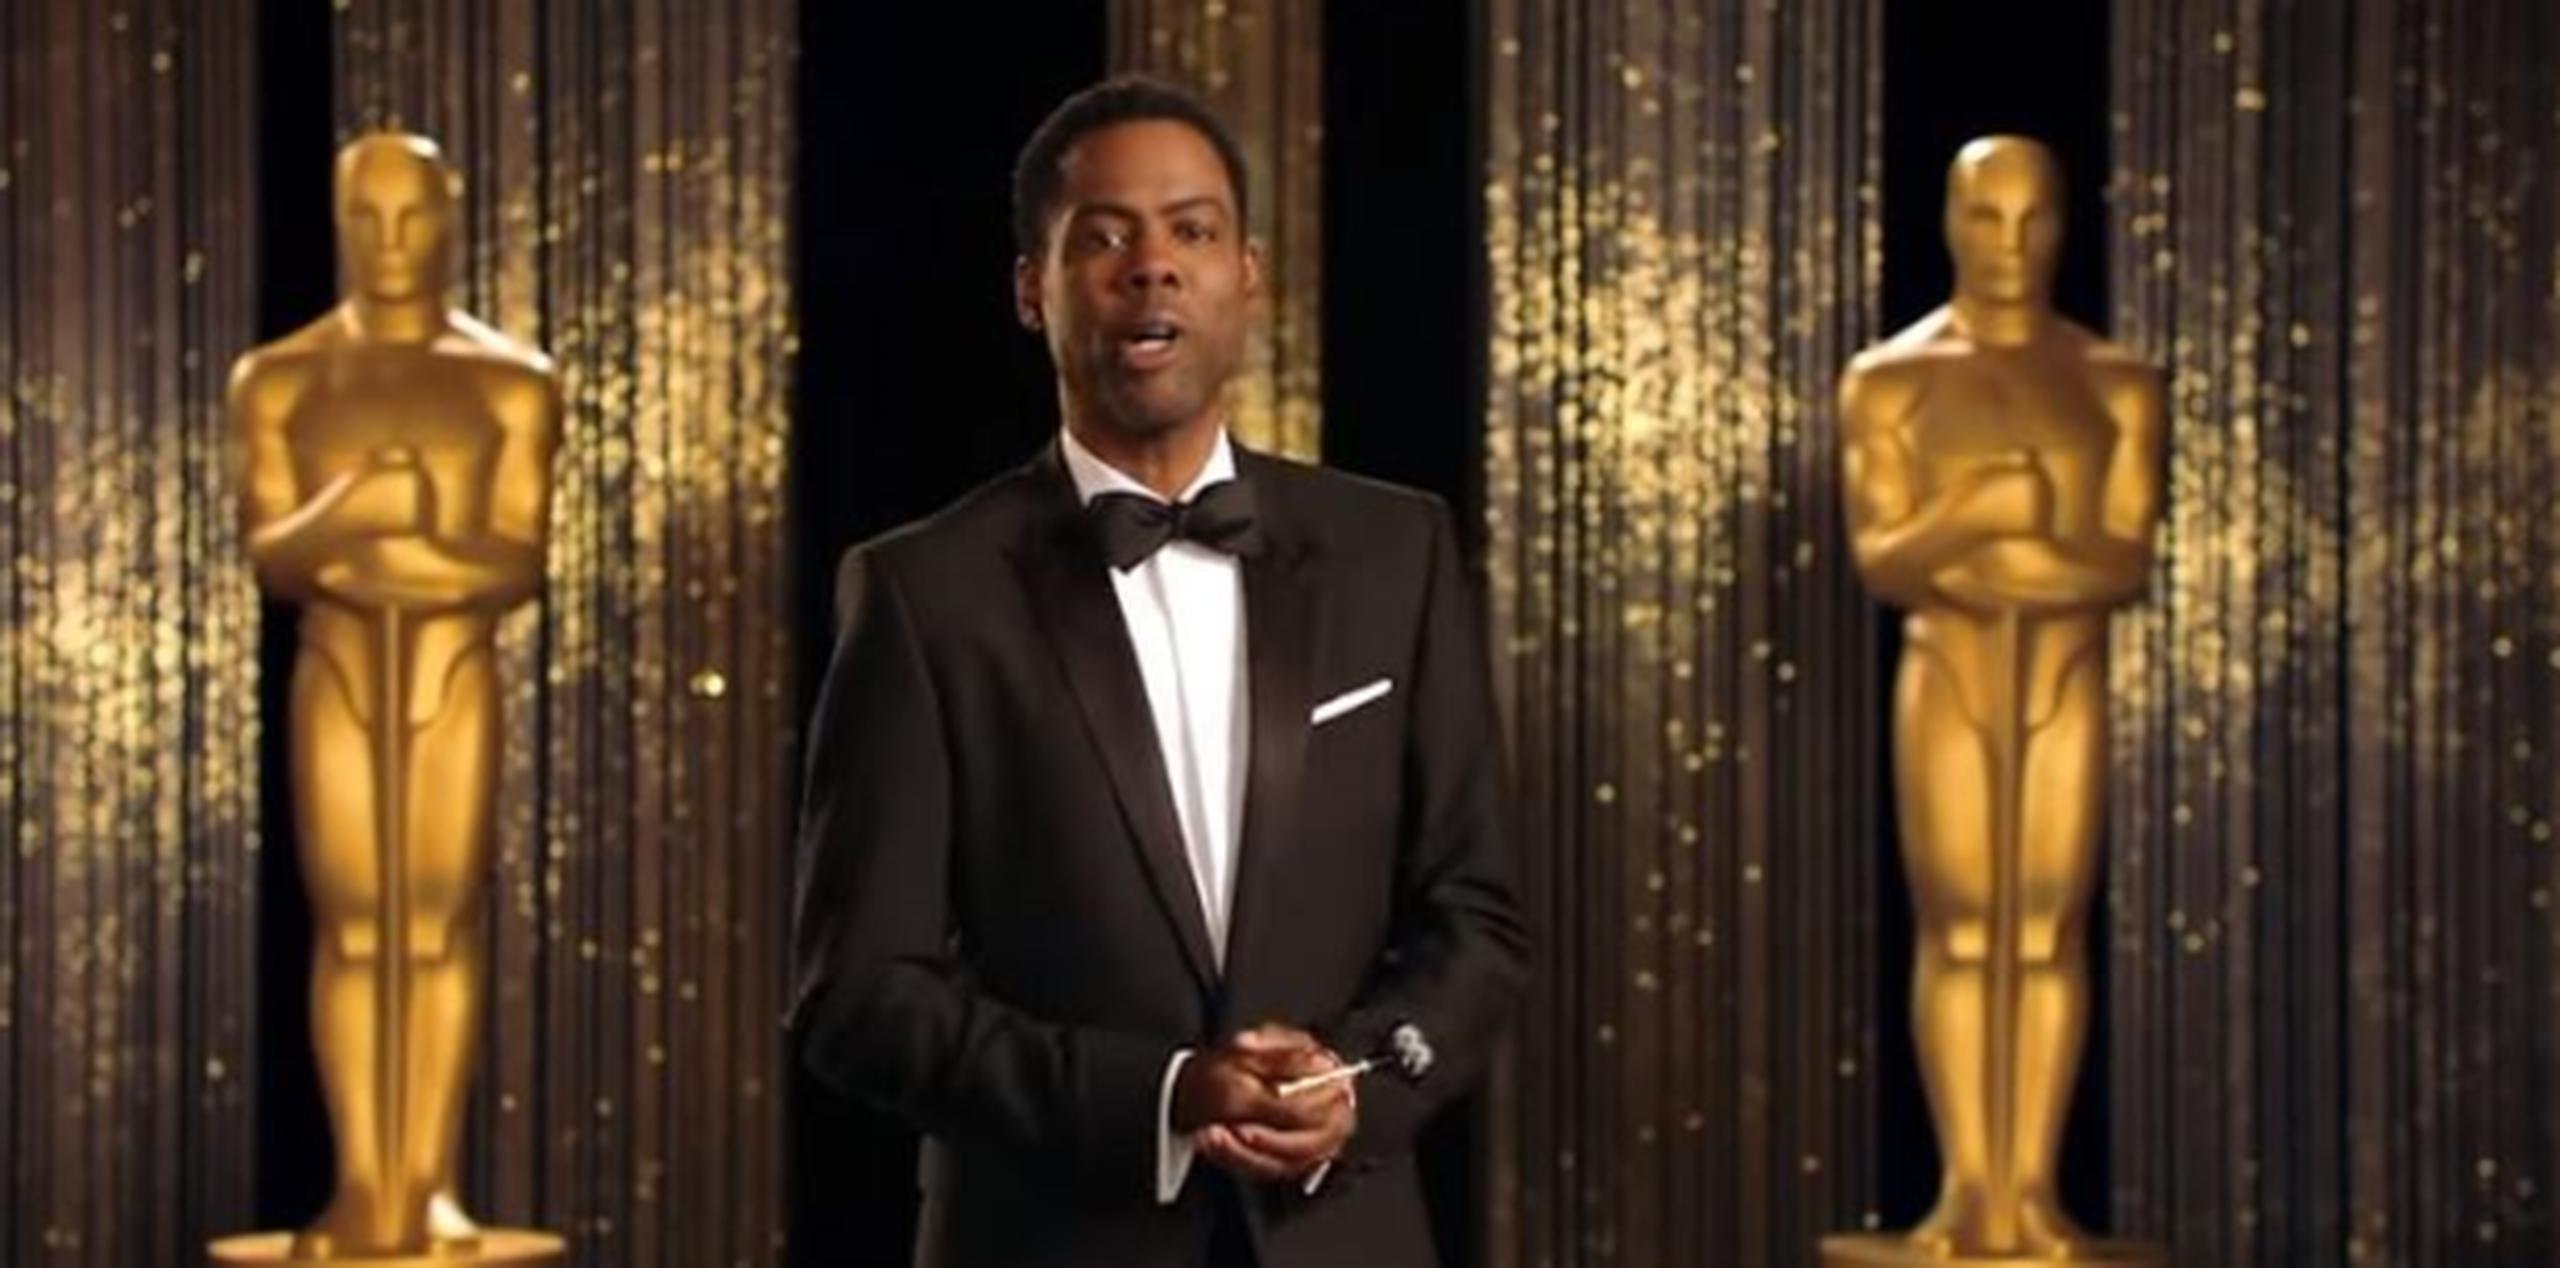 El 14 de enero se anunciarán las nominaciones al Oscar y la ceremonia de entrega se realizará el 28 de febrero. (Captura de vídeo)